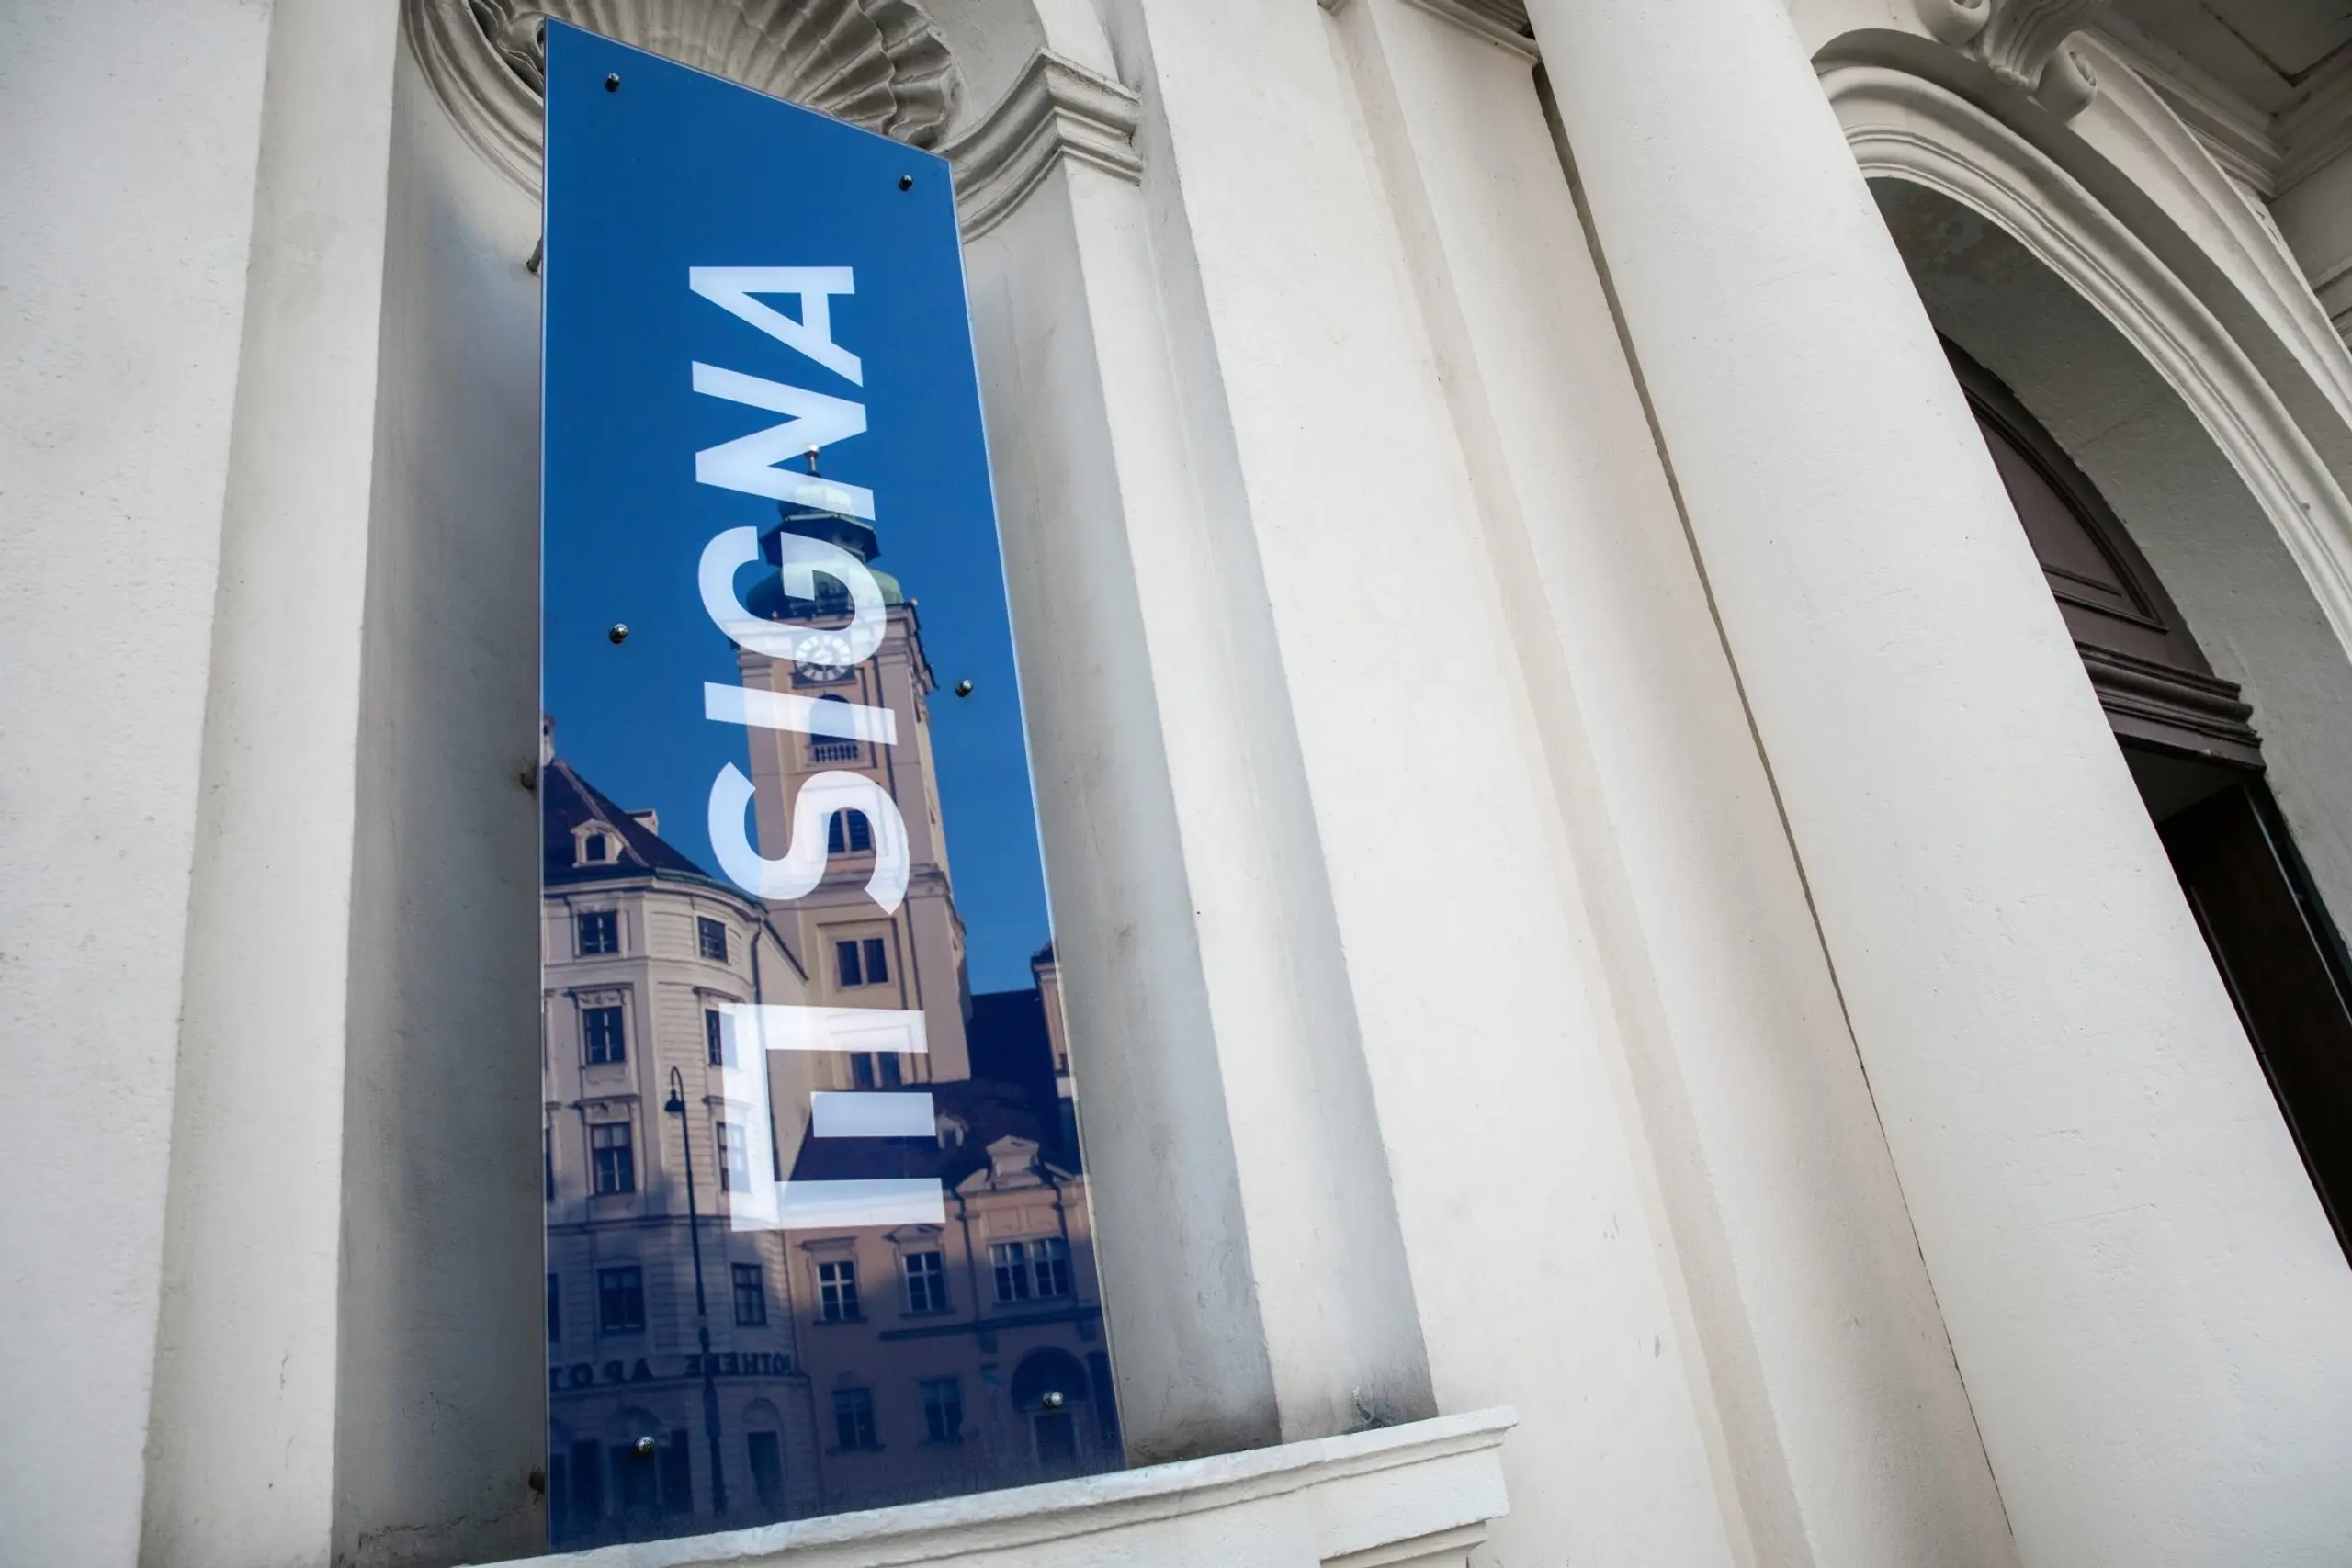 Signa Holding: Konkurs statt Sanierung - Gläubigern droht Totalausfall